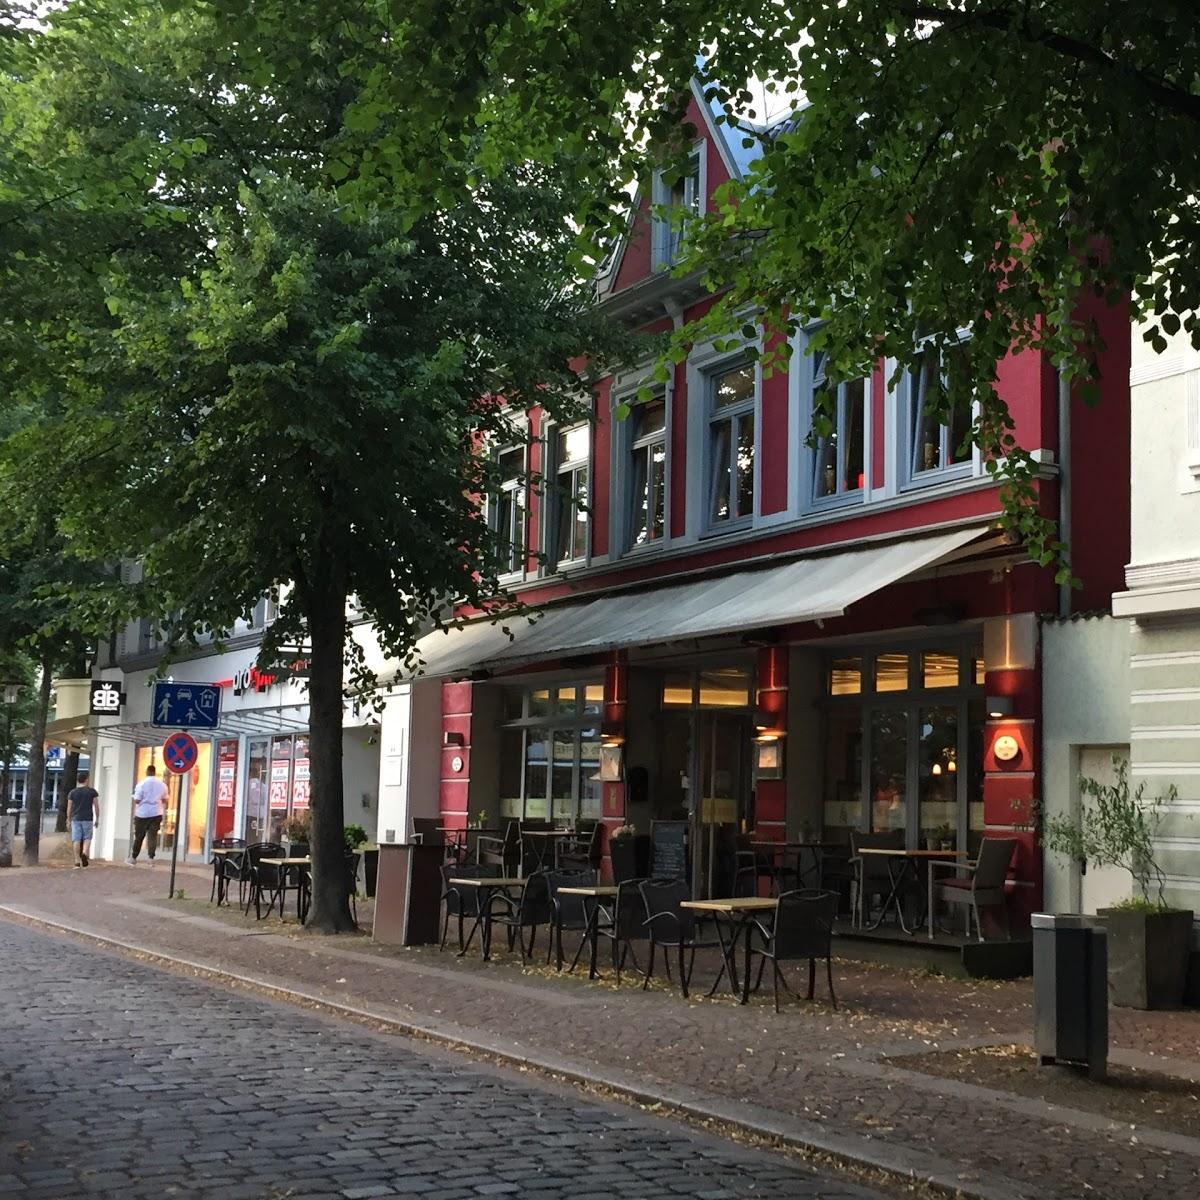 Restaurant "Casa Rossa Restaurant & Weinbar" in Ahrensburg